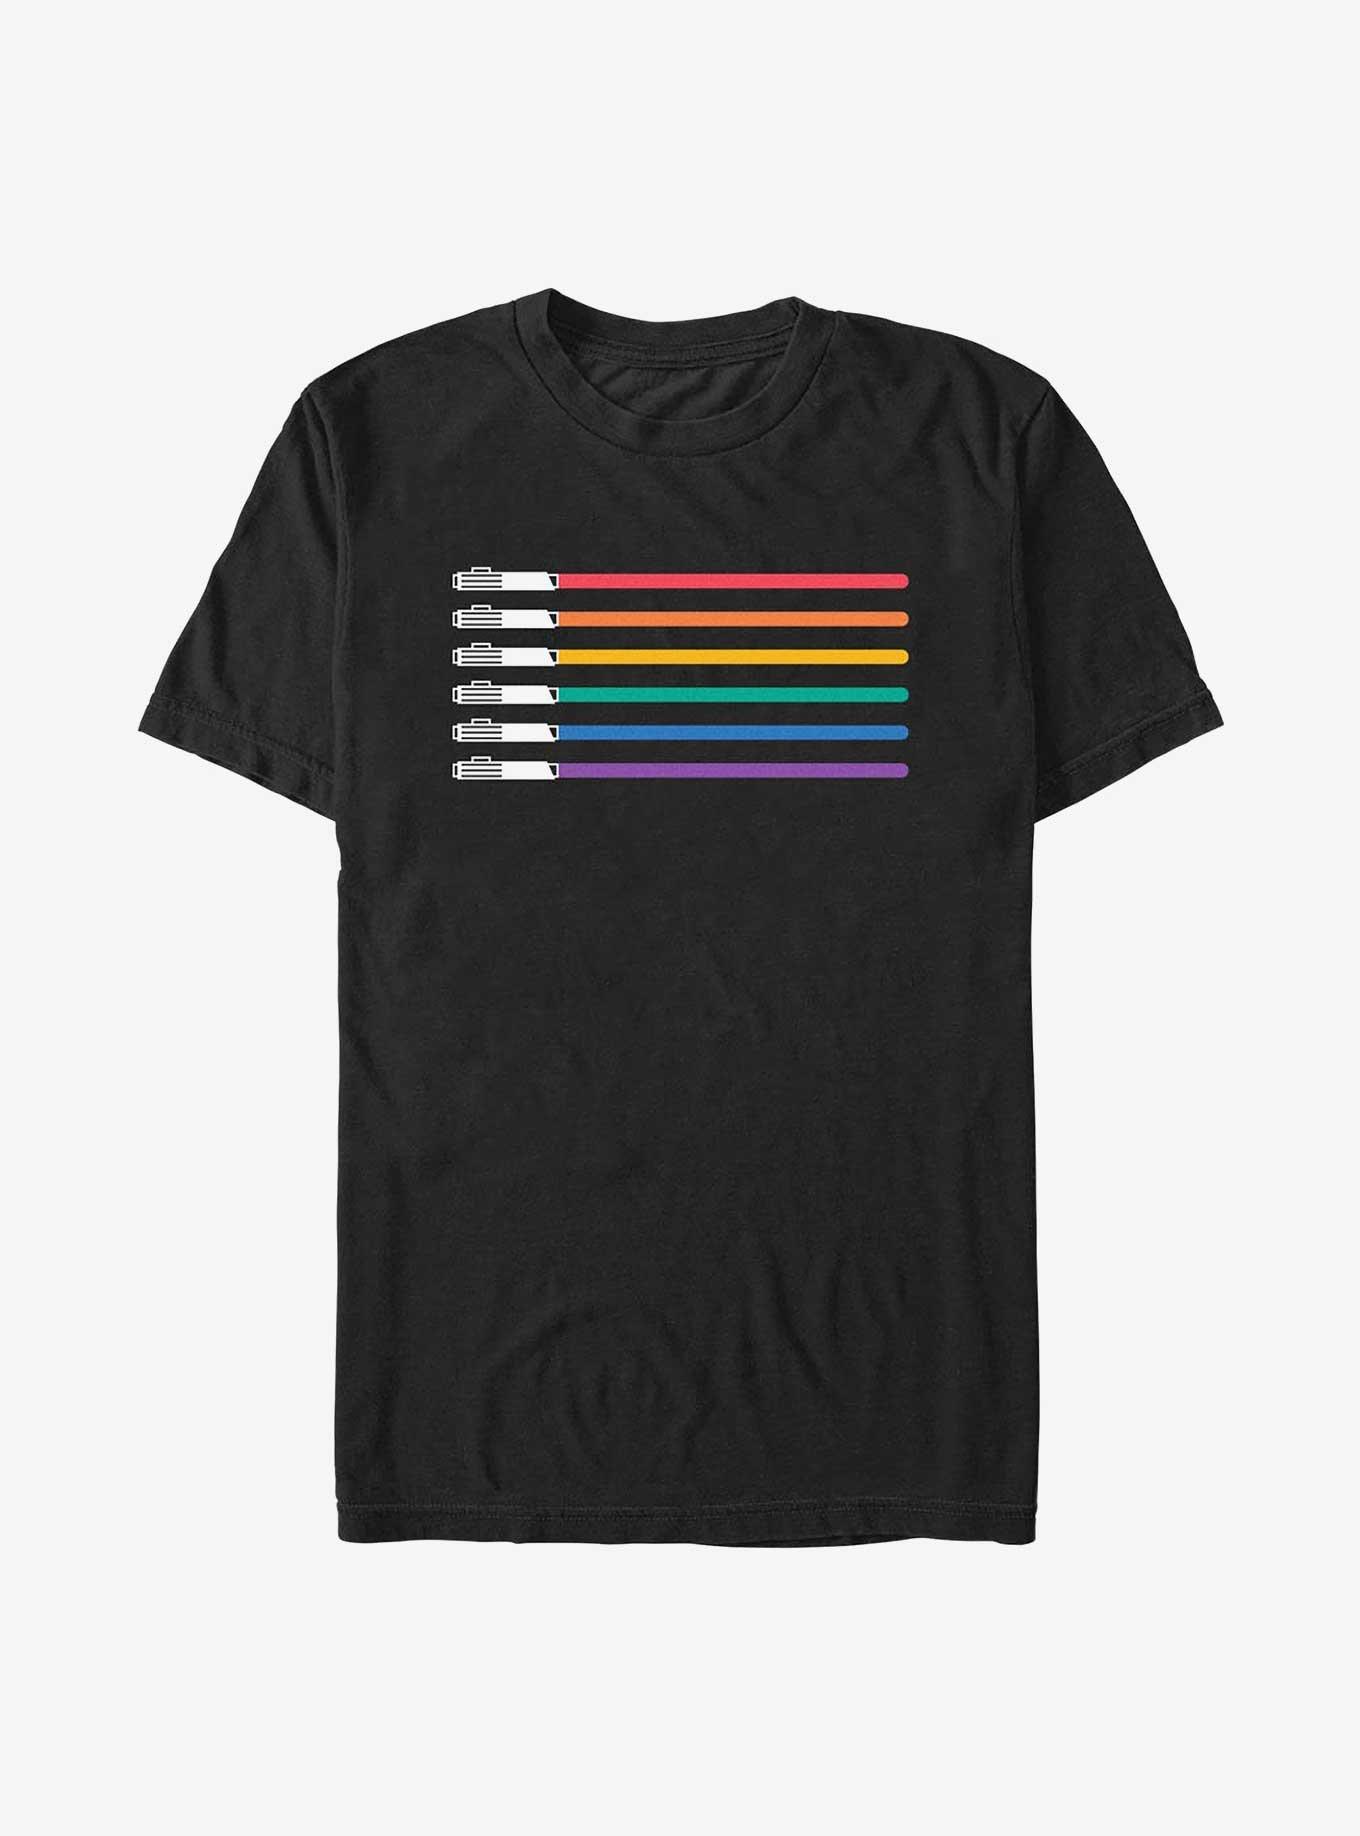 Star Wars Lightsaber Pride Flag Extra Soft T-Shirt, BLACK, hi-res